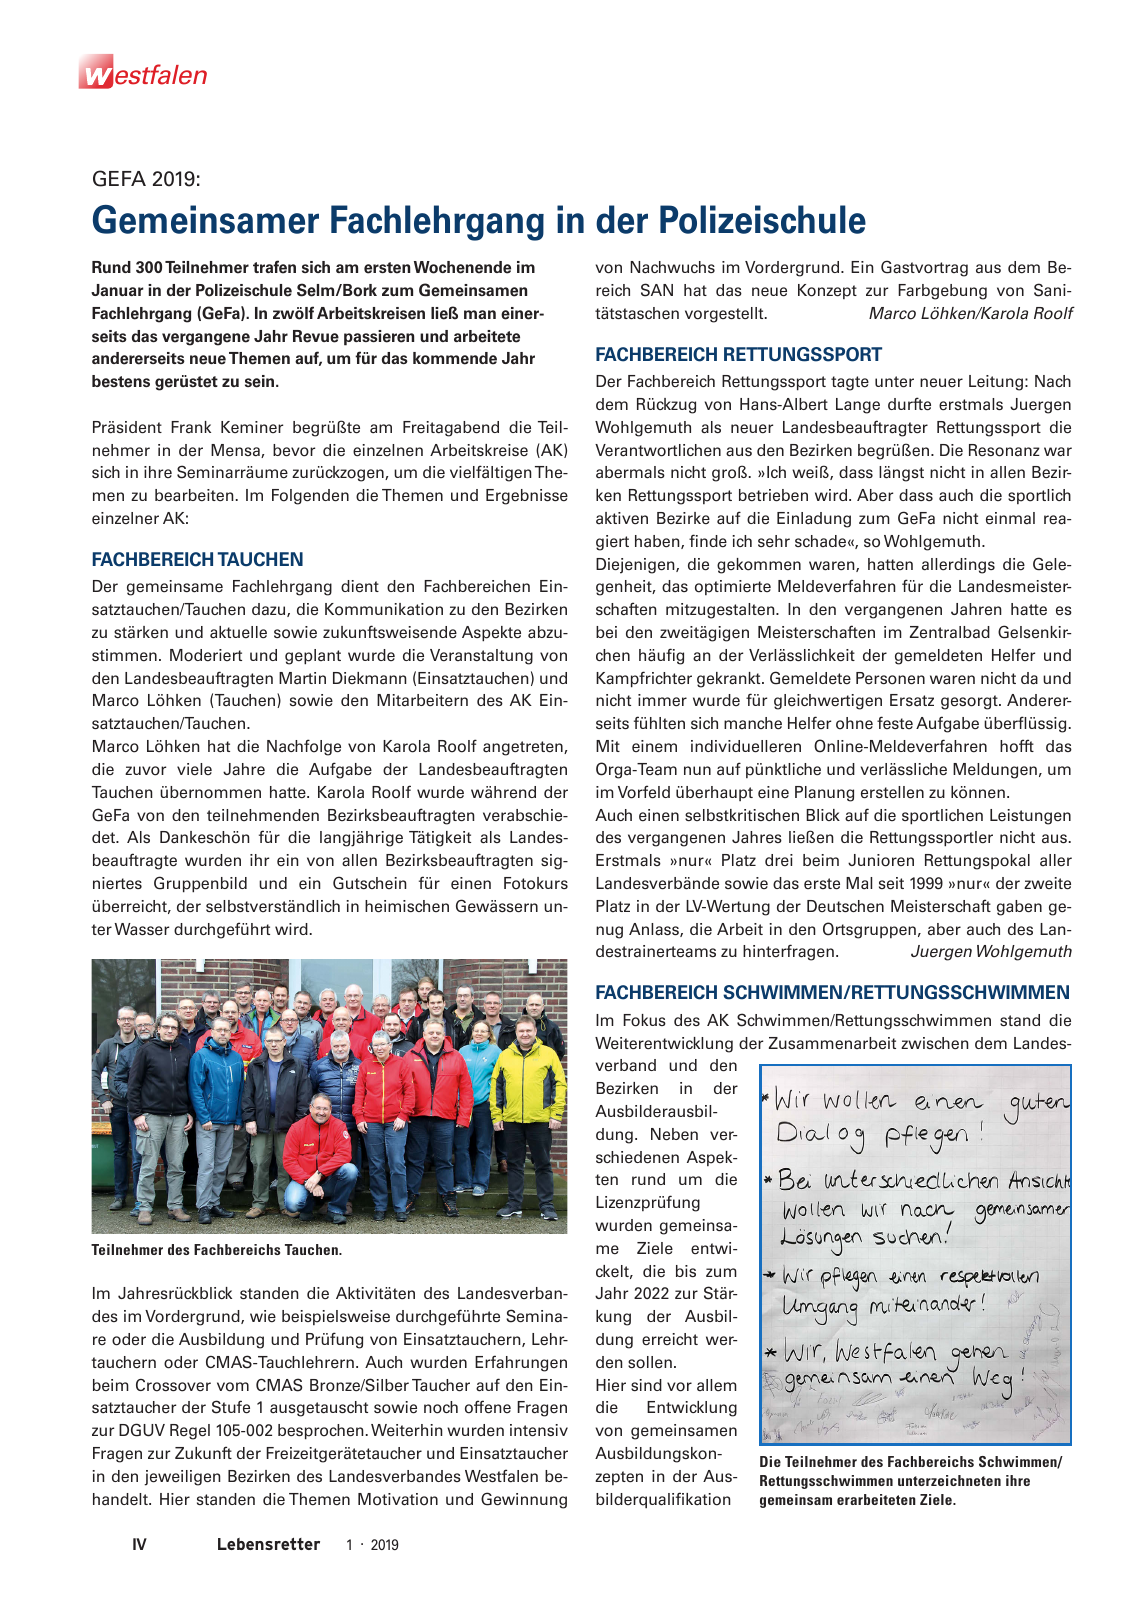 Vorschau Lebensretter 1/2019 –  Regionalausgabe Westfalen Seite 6